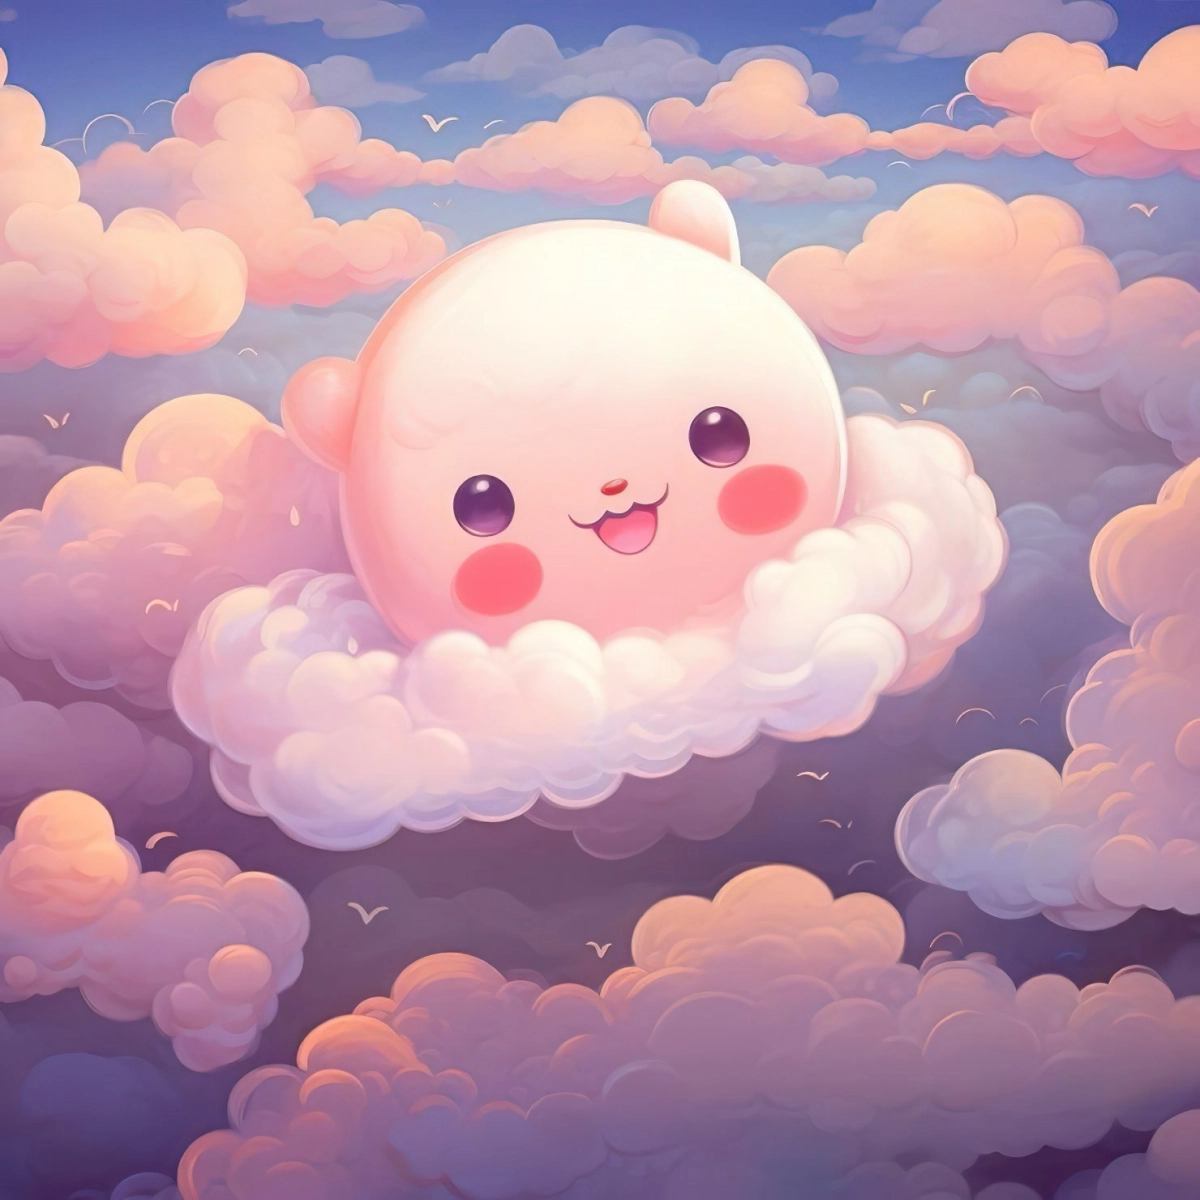 ciel bleu nuages roses fonds d ecran cute personnage cute kawaii